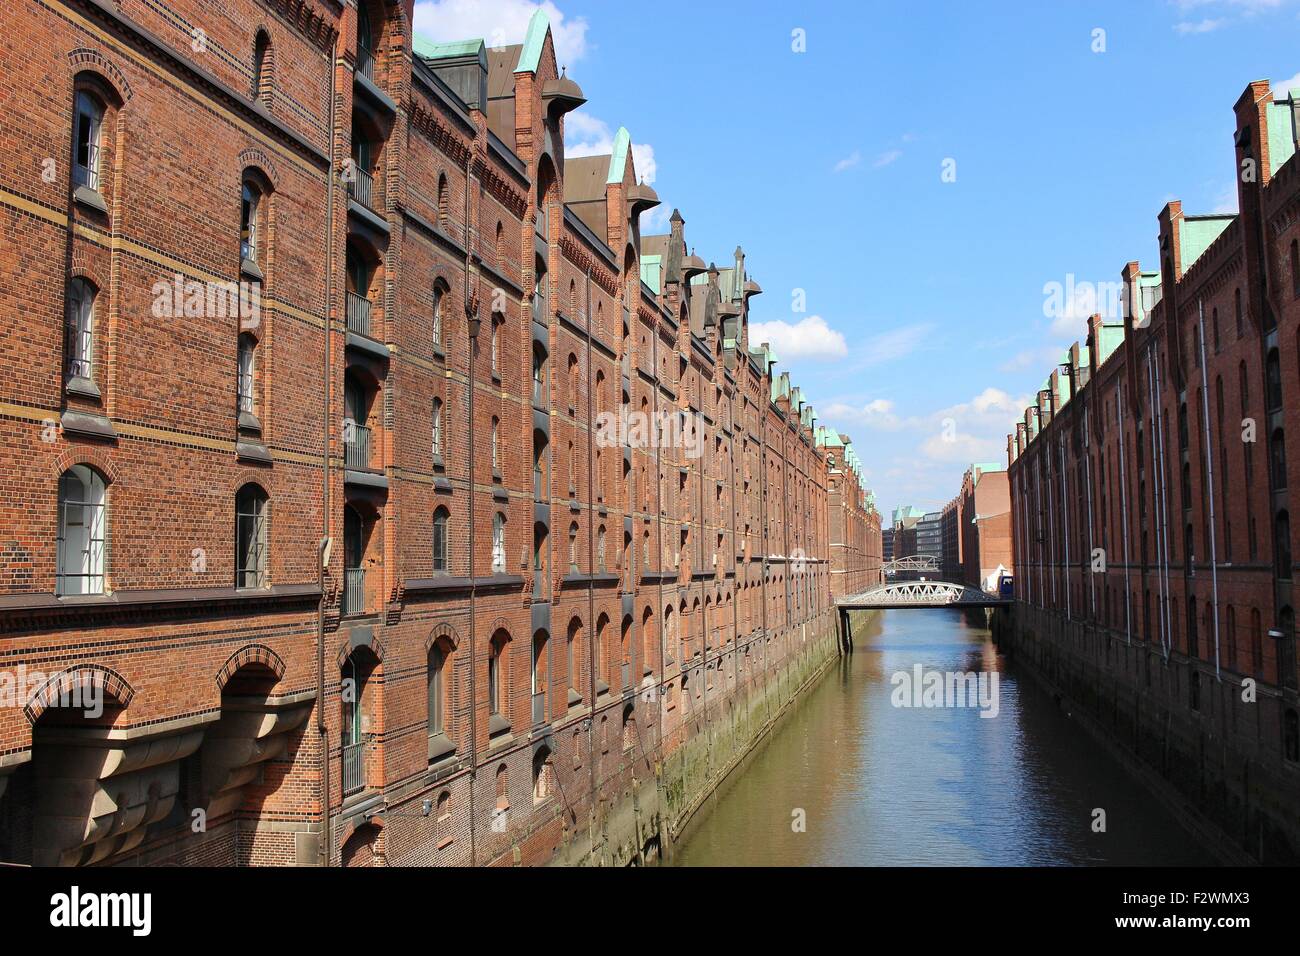 Der berühmte "Speicherstadt" in Hamburg, Deutschland, Europa. Alten Lagerhäusern und Kanal am späten Nachmittag. Stockfoto